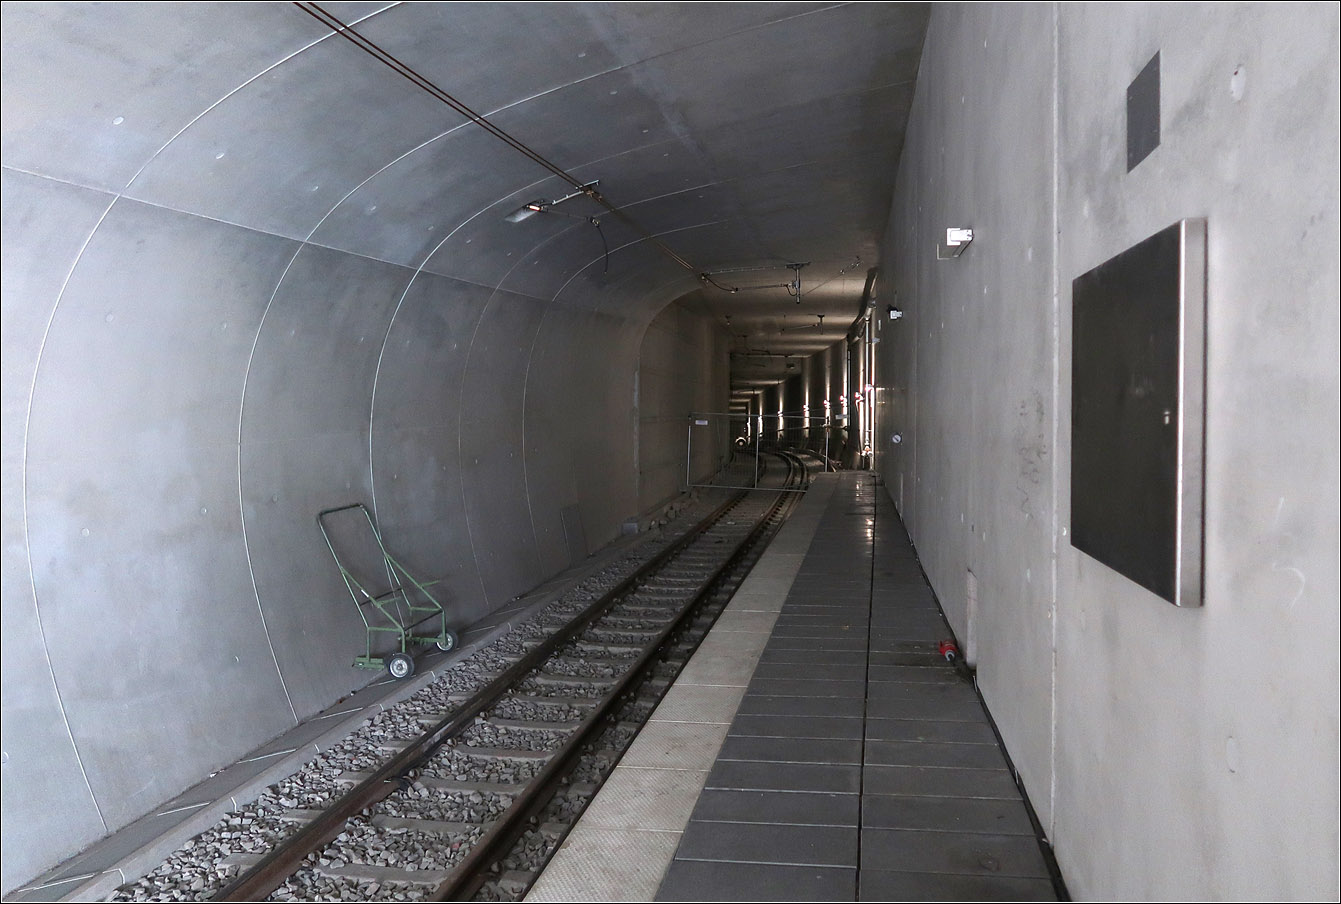 Der vorläufig? letzte Tunnelbau - 

... bei der Stadtbahn Stuttgart ist der Ersatzneubau des Tunnels zwischen Schillerstraße und Staatsgalerie. Der neue Stuttgarter Hauptbahnhof bedingte den Abriss und Neubau der Haltestelle Staatsgalerie mit den Anschluss-Tunnelstrecken. Nachdem man ursprünglich geplant hatte dies weitgehend unter Beibehaltung des Stadtbahnbetriebs zu realisieren mit nur kurzen Sperrungen, änderte man dann doch die Planung und sperrte Teilabschnitte.
Die Rohbauarbeiten am Anschluss der neuen Anlagen an den Tunnel in Richtung Charlottenplatz erfolgte zwischen Mai 2016 und Dezember 2017. Dabei wurde die Verbindung Staatsgalerie - Charlottenplatz gekappt und das Stadtbahnliniennetz entsprechend angepasst.
Im Anschluss daran erfolgte die Stilllegung des Tunnelabschnittes Staatsgalerie - Hauptbahnhof (Arunlf-Klett-Platz) um hier den kreuzungsfreien Abzweig neu bauen zu können. Dies Sperrung wird noch bis zum Dezember 2023 andauern und dauerte dann also über einen Zeitraum von sechs Jahren. Ein Teil der neuen Tunnelstrecken konnte erst nach Abbruch des alten U-Bahnhofes Staatsgalerie erstellt werden, also nach 2020 als die Stadtbahnen in die neue Haltestelle verlegt waren.
Der Tunnelanschluss in Richtung Neckartor wurde dabei unter laufendem Betrieb gebaut, mit nur kurzer Sperrung.

Das Bild zeigt an der Station Staatsgalerie das vom Hauptbbahnhof (Arnulf-Klett-Platz) kommende Gleis, das die Streckengleise Richtung Charlottenplatz kreuzungsfrei unterfährt. Ein Teil des alten Tunnels wird übrigens für eine Abstellanlage genutzt werden.

Nachdem es seit beginn des Stadtbahnbaus in Stuttgart 1962 (zuerst U-Straßenbahn, dann U-Bahn, dann Stadtbahn) durchgehend immer Tunnelprojekte gegeben hat, wird nach Fertigstellung dieser Tunnelstrecke in absehbarer Zeit keine weiteren Tunnelbaustellen für die Stadtbahn mehr geben.

21.07.2023 (M)